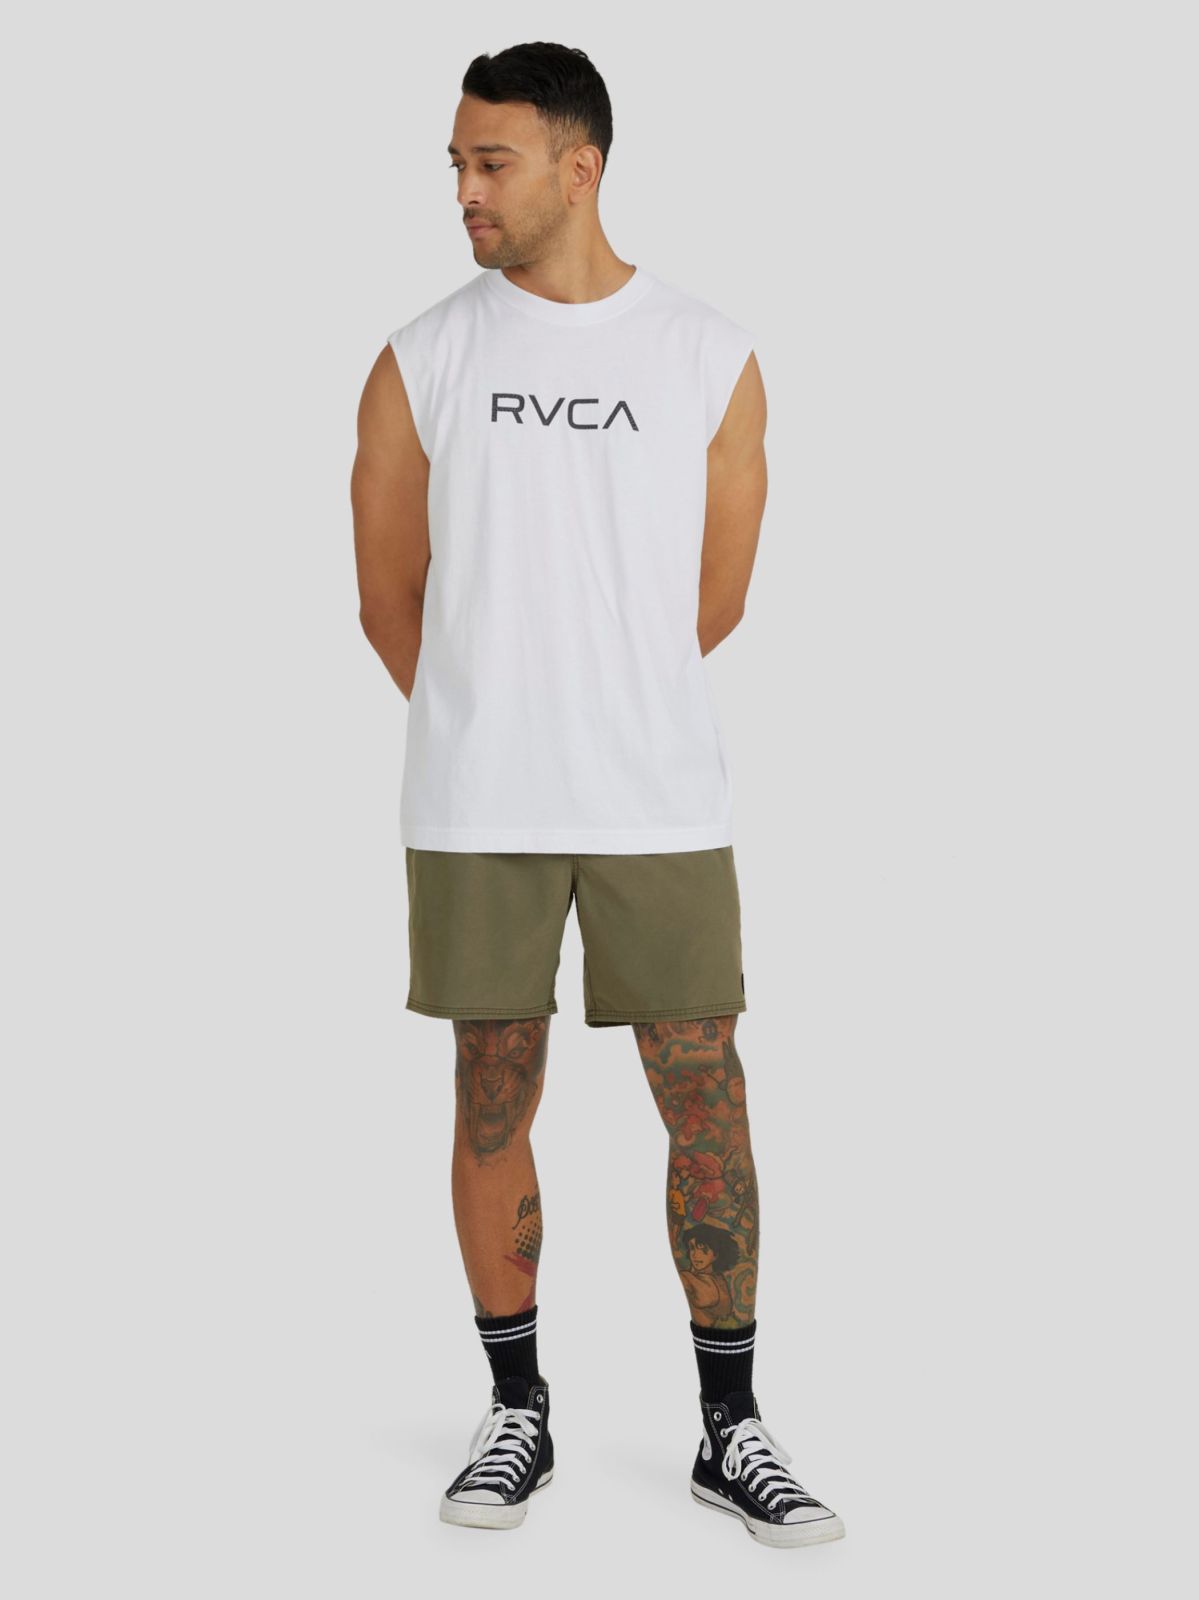  גופיה עם הדפס לוגו של RVCA